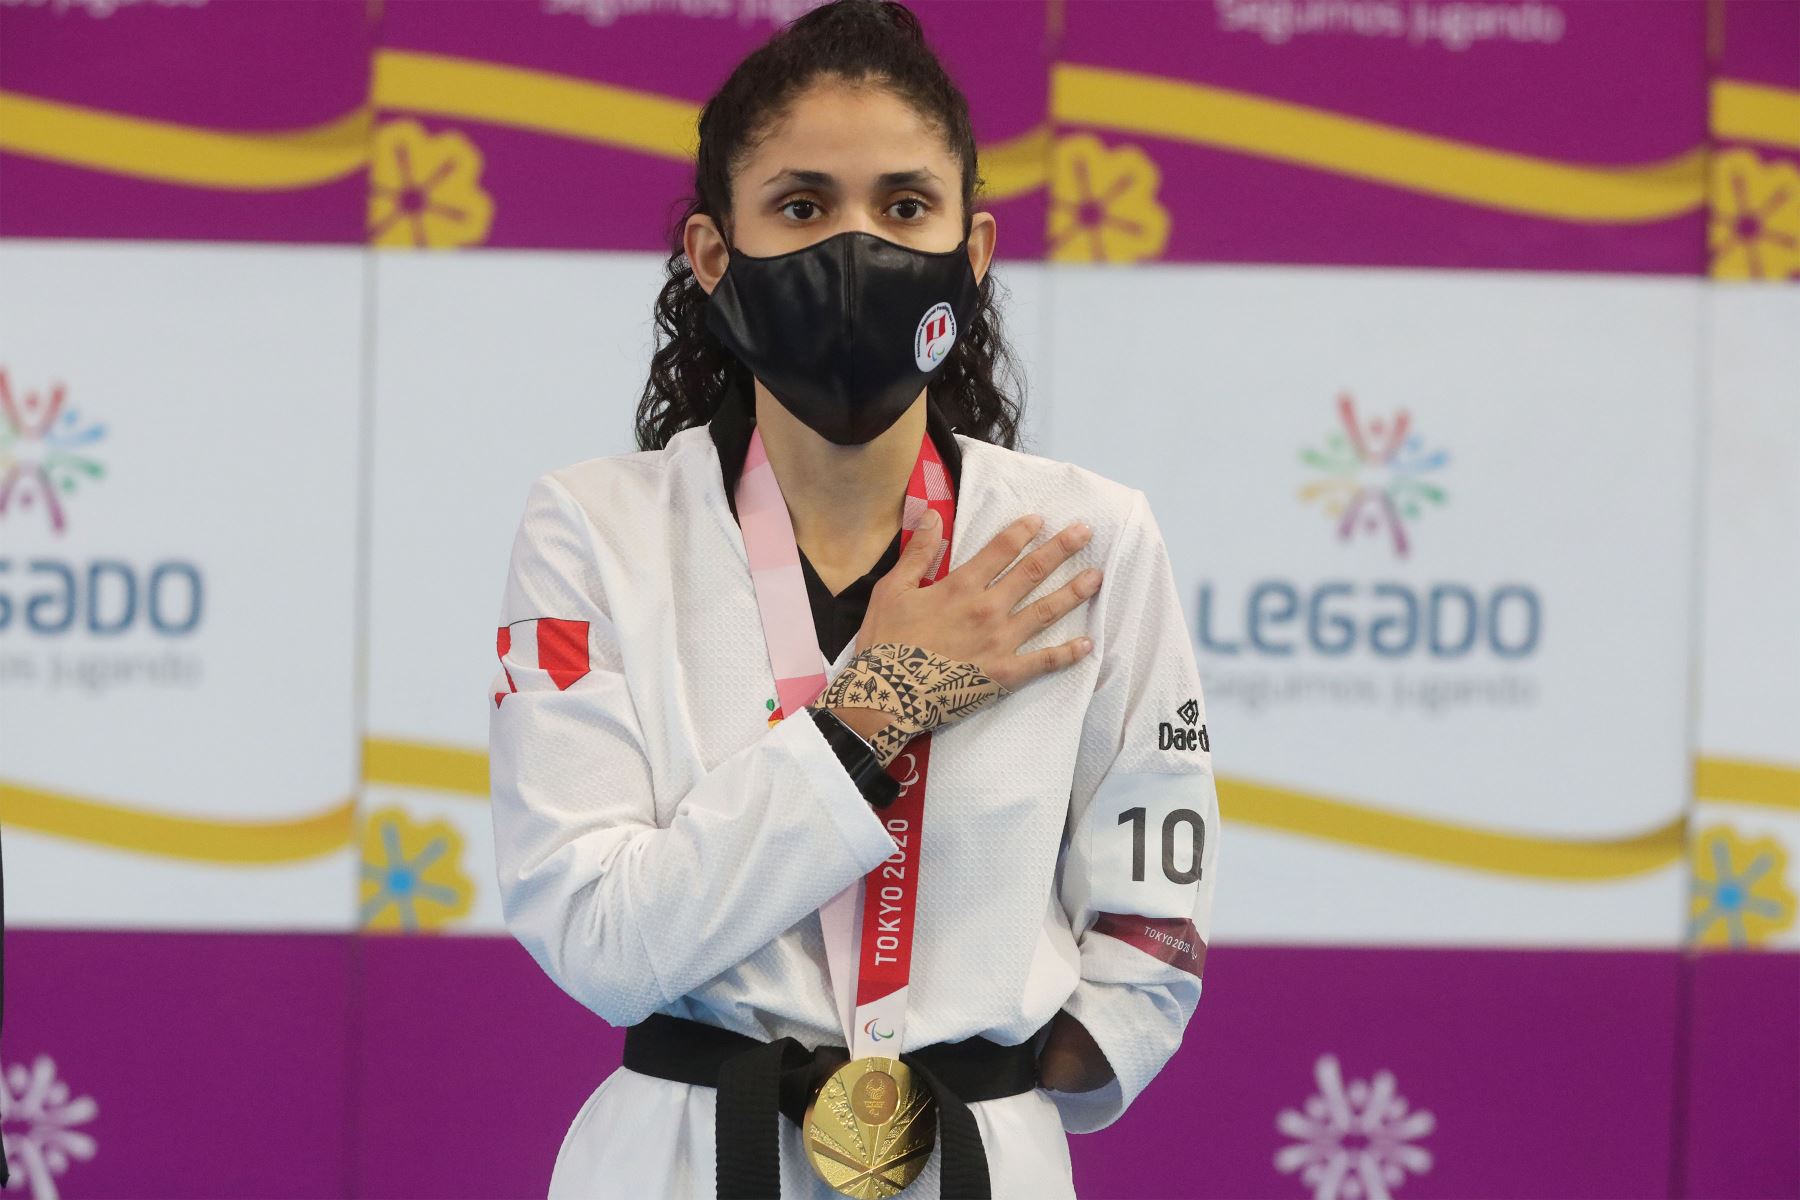 Rinden homenaje a Angélica Espinoza por medalla de oro en Tokio 2020 |  Noticias | Agencia Peruana de Noticias Andina